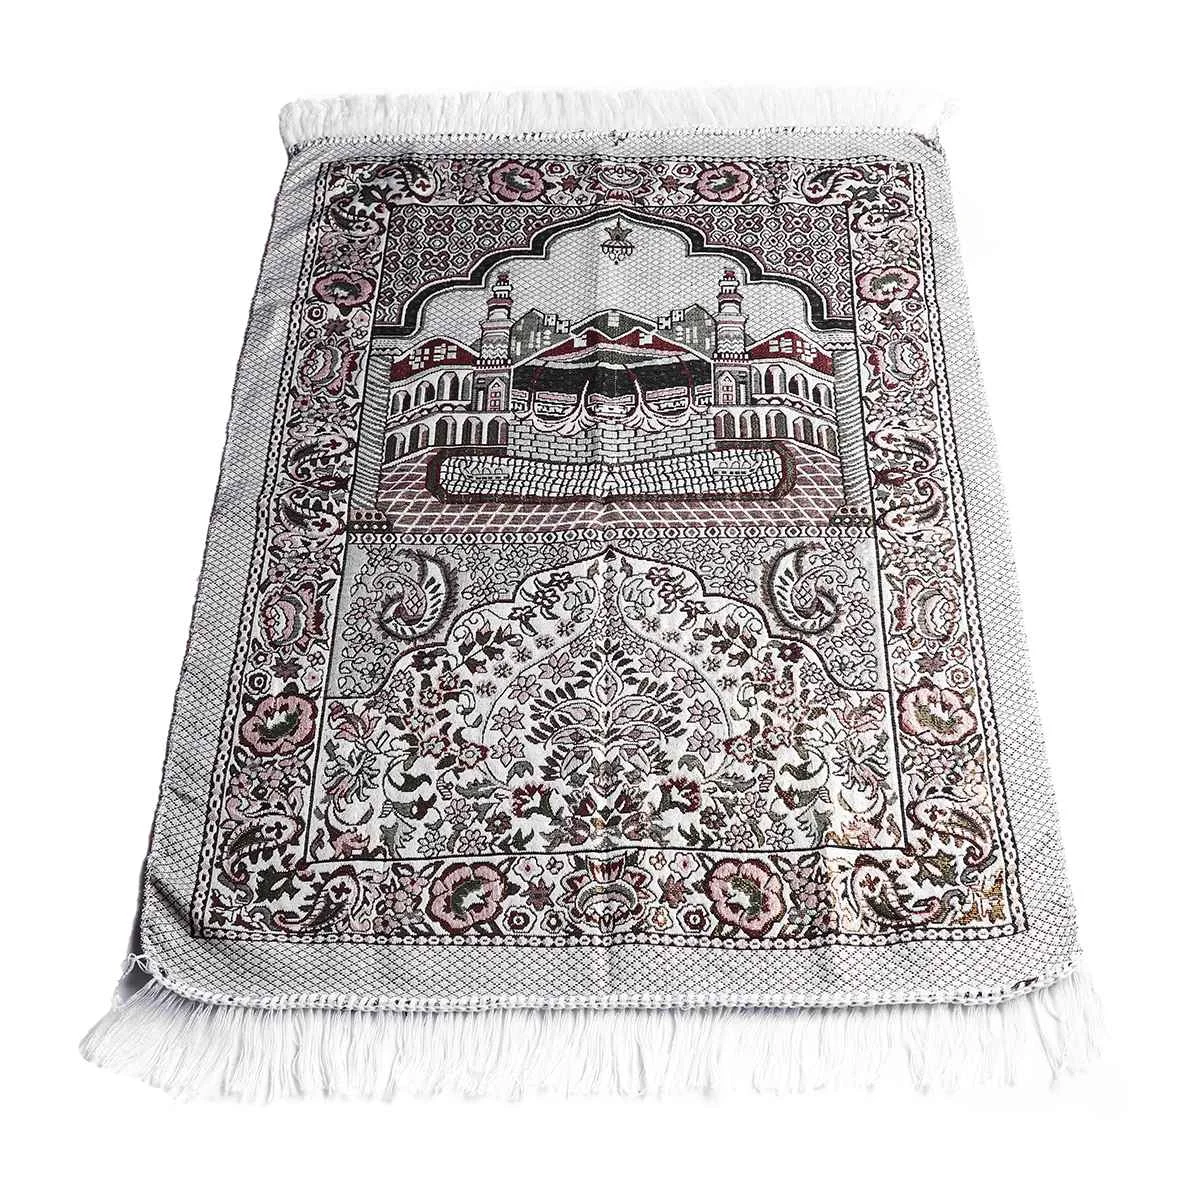 Исламский молящийся коврик Kiwarm 70x110 см Коран турецкая исламская мусульманская молитва ковер коврик с кисточками гобелен